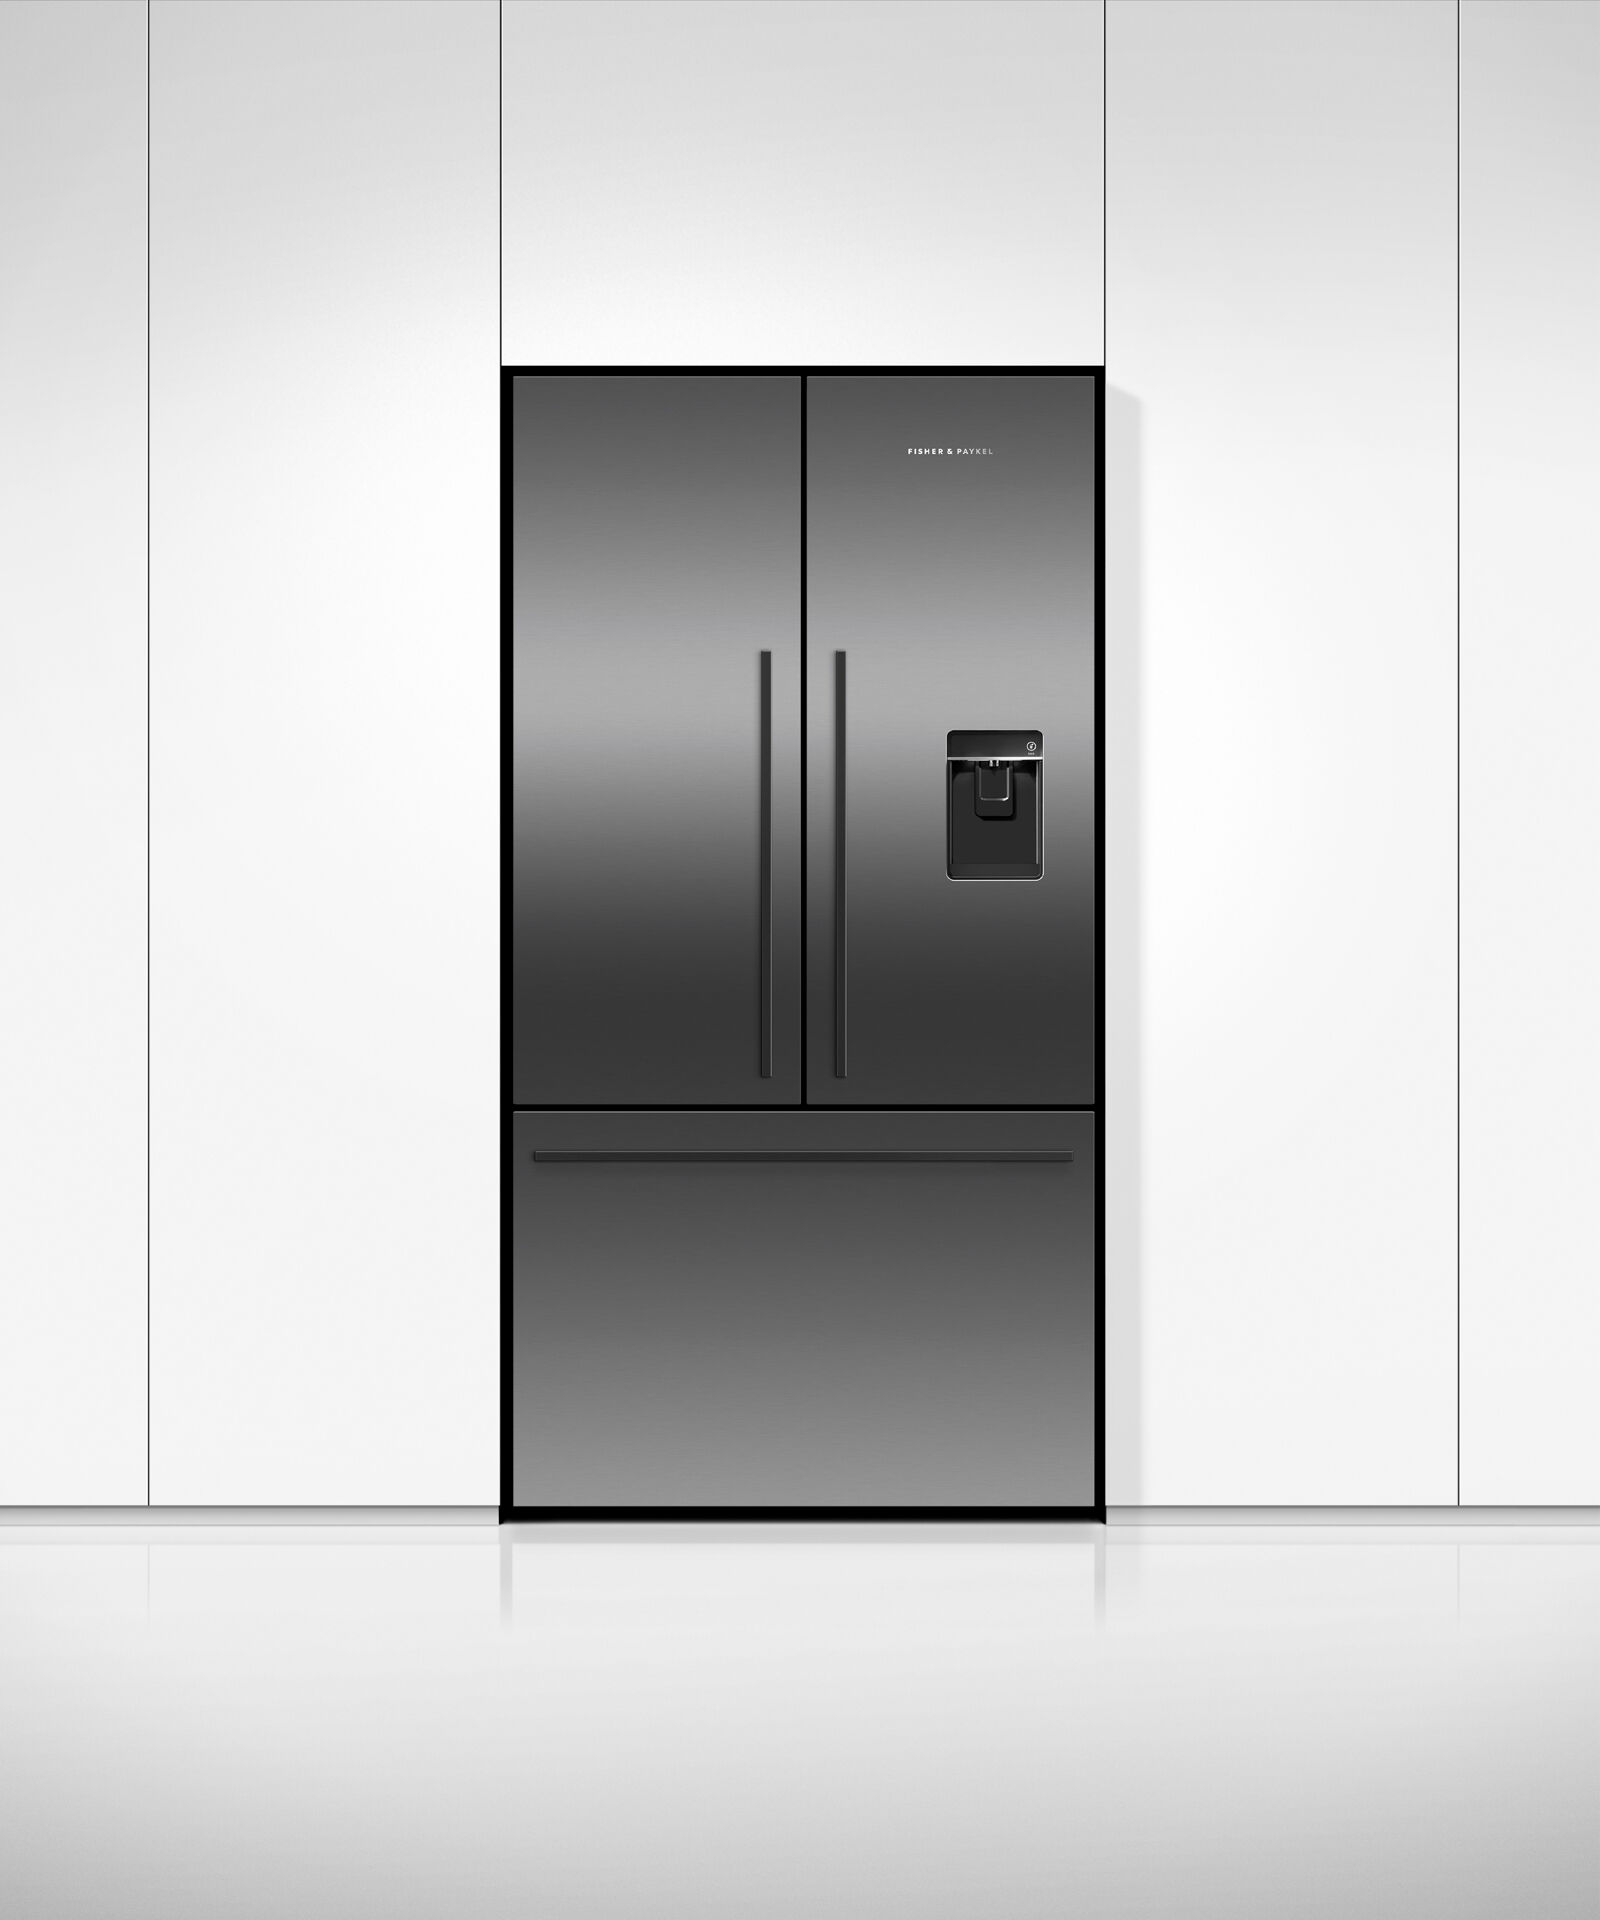 Freestanding French Door Refrigerator Freezer, 90cm, Ice & Water gallery image 3.0